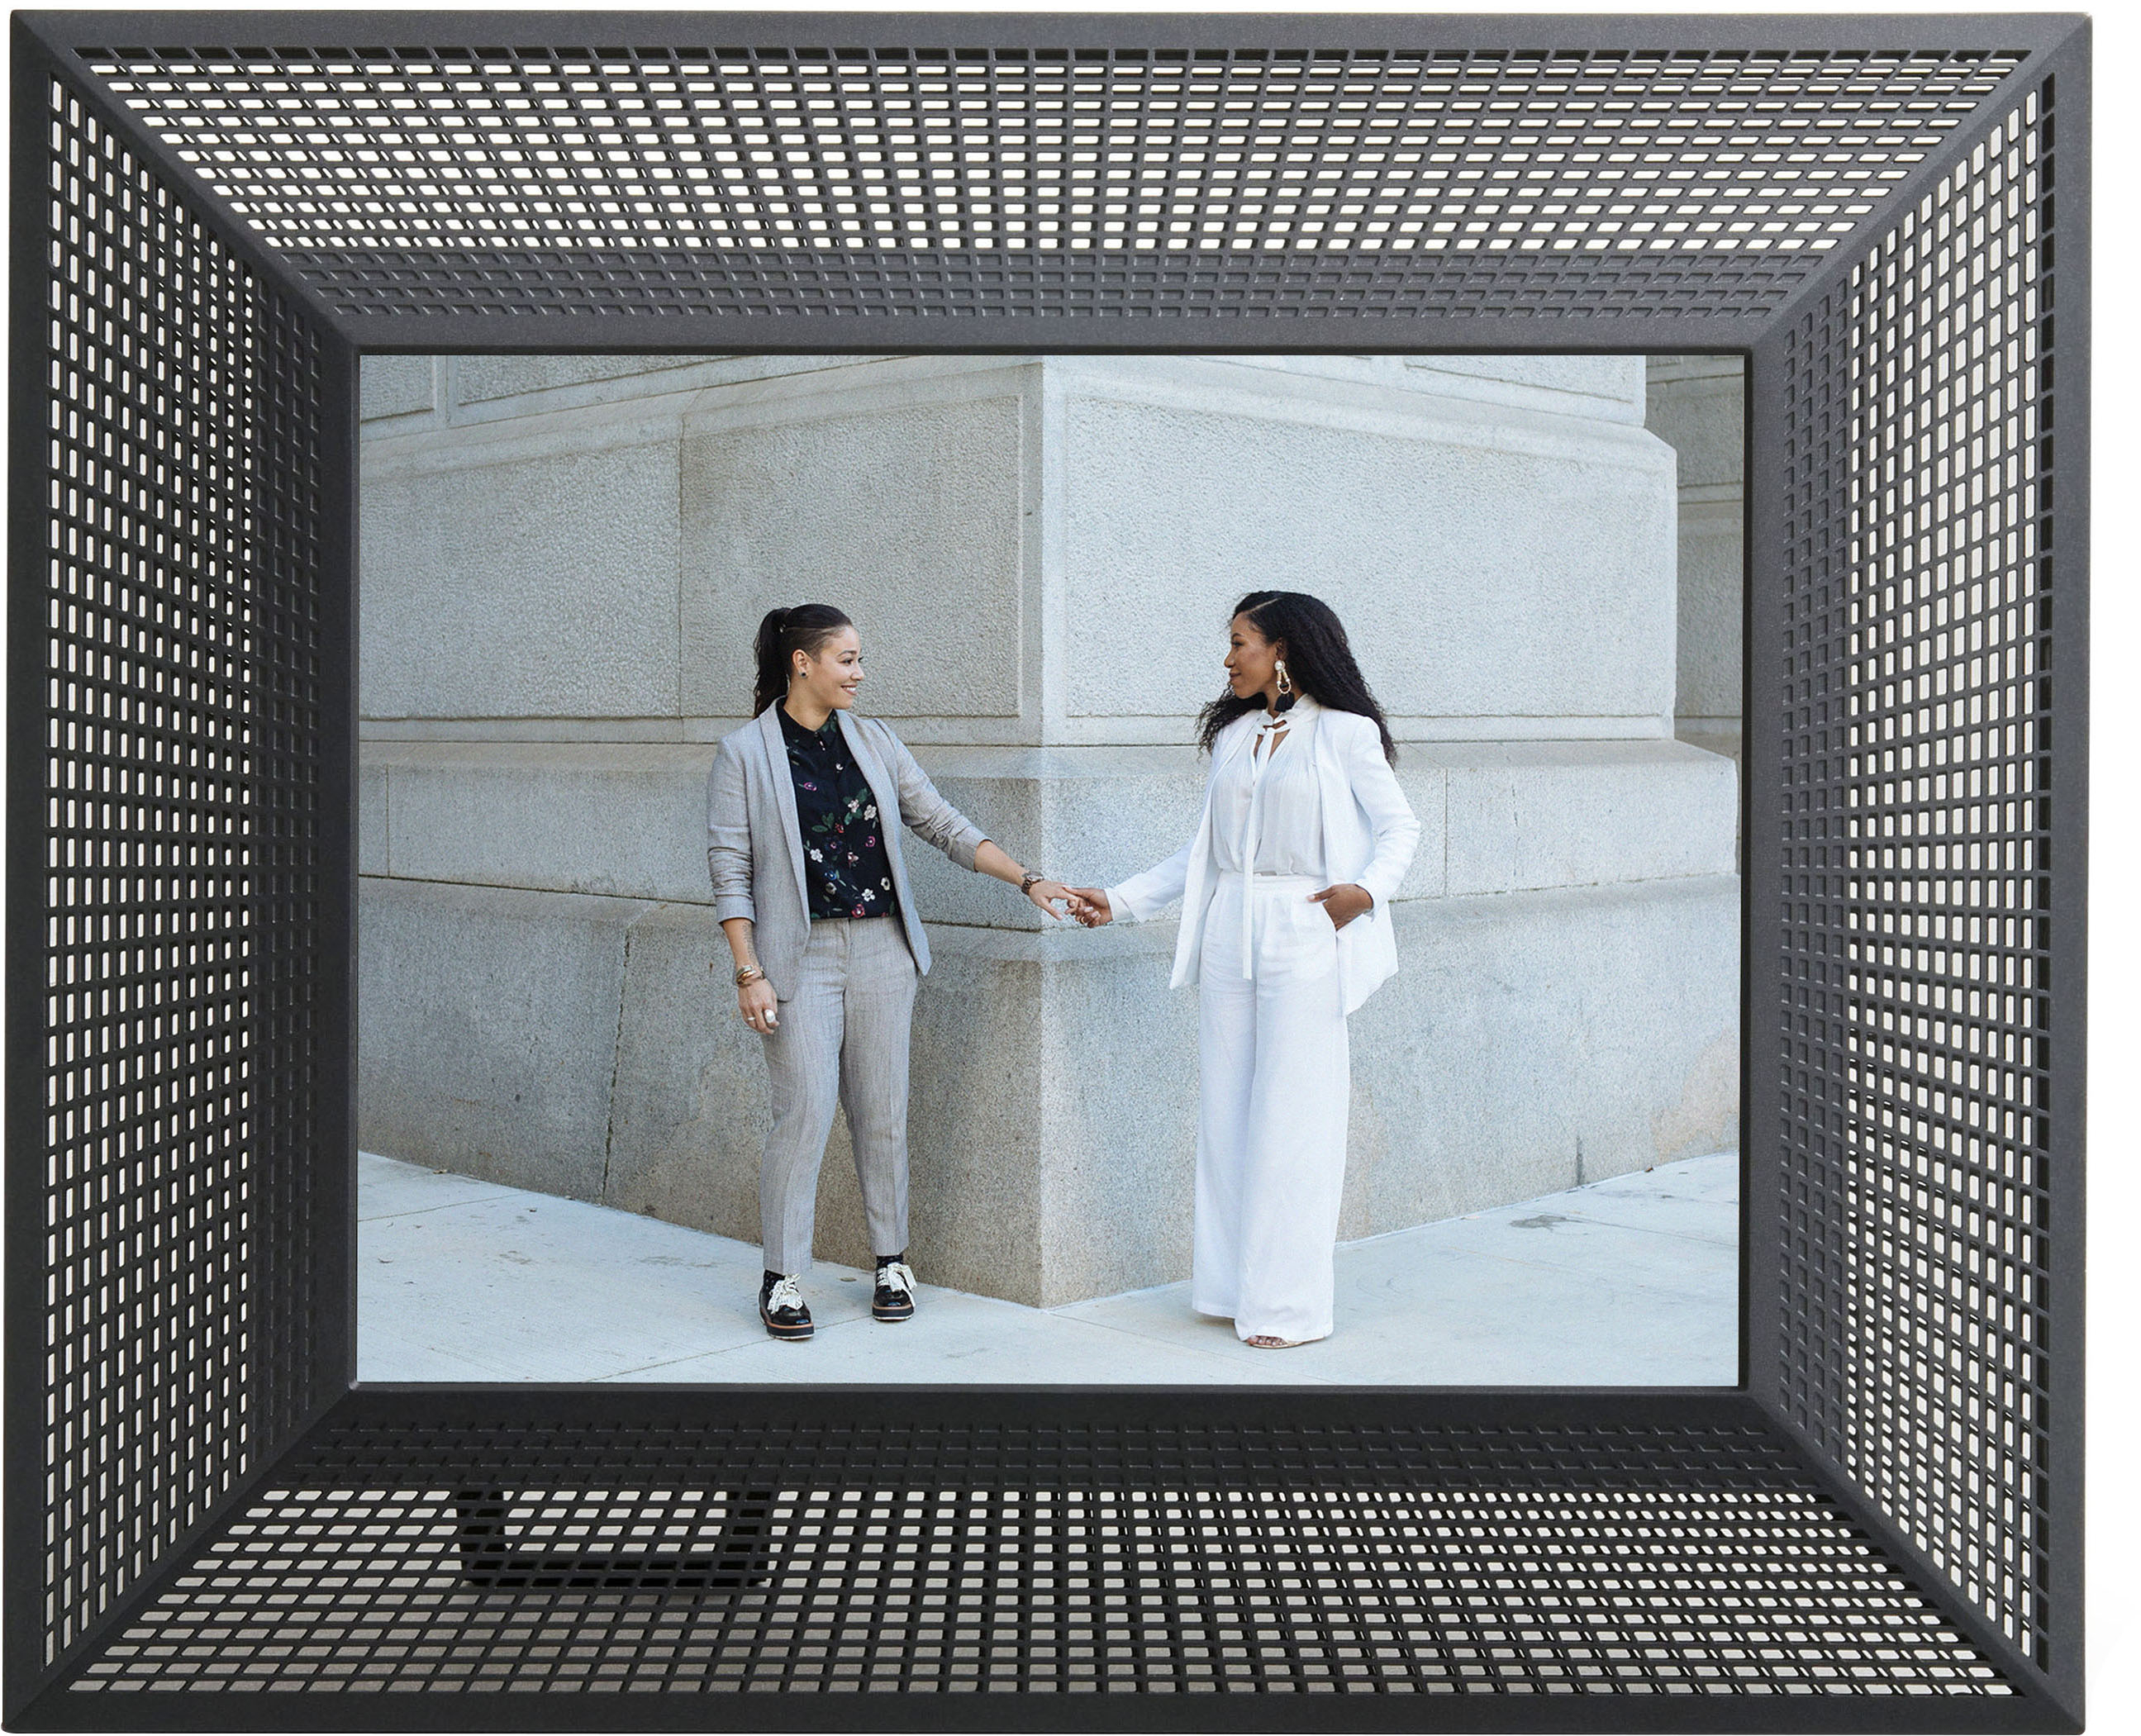 Left View: Aura - Smith 9.7" LCD Wi-Fi Digital Photo Frame - Onyx